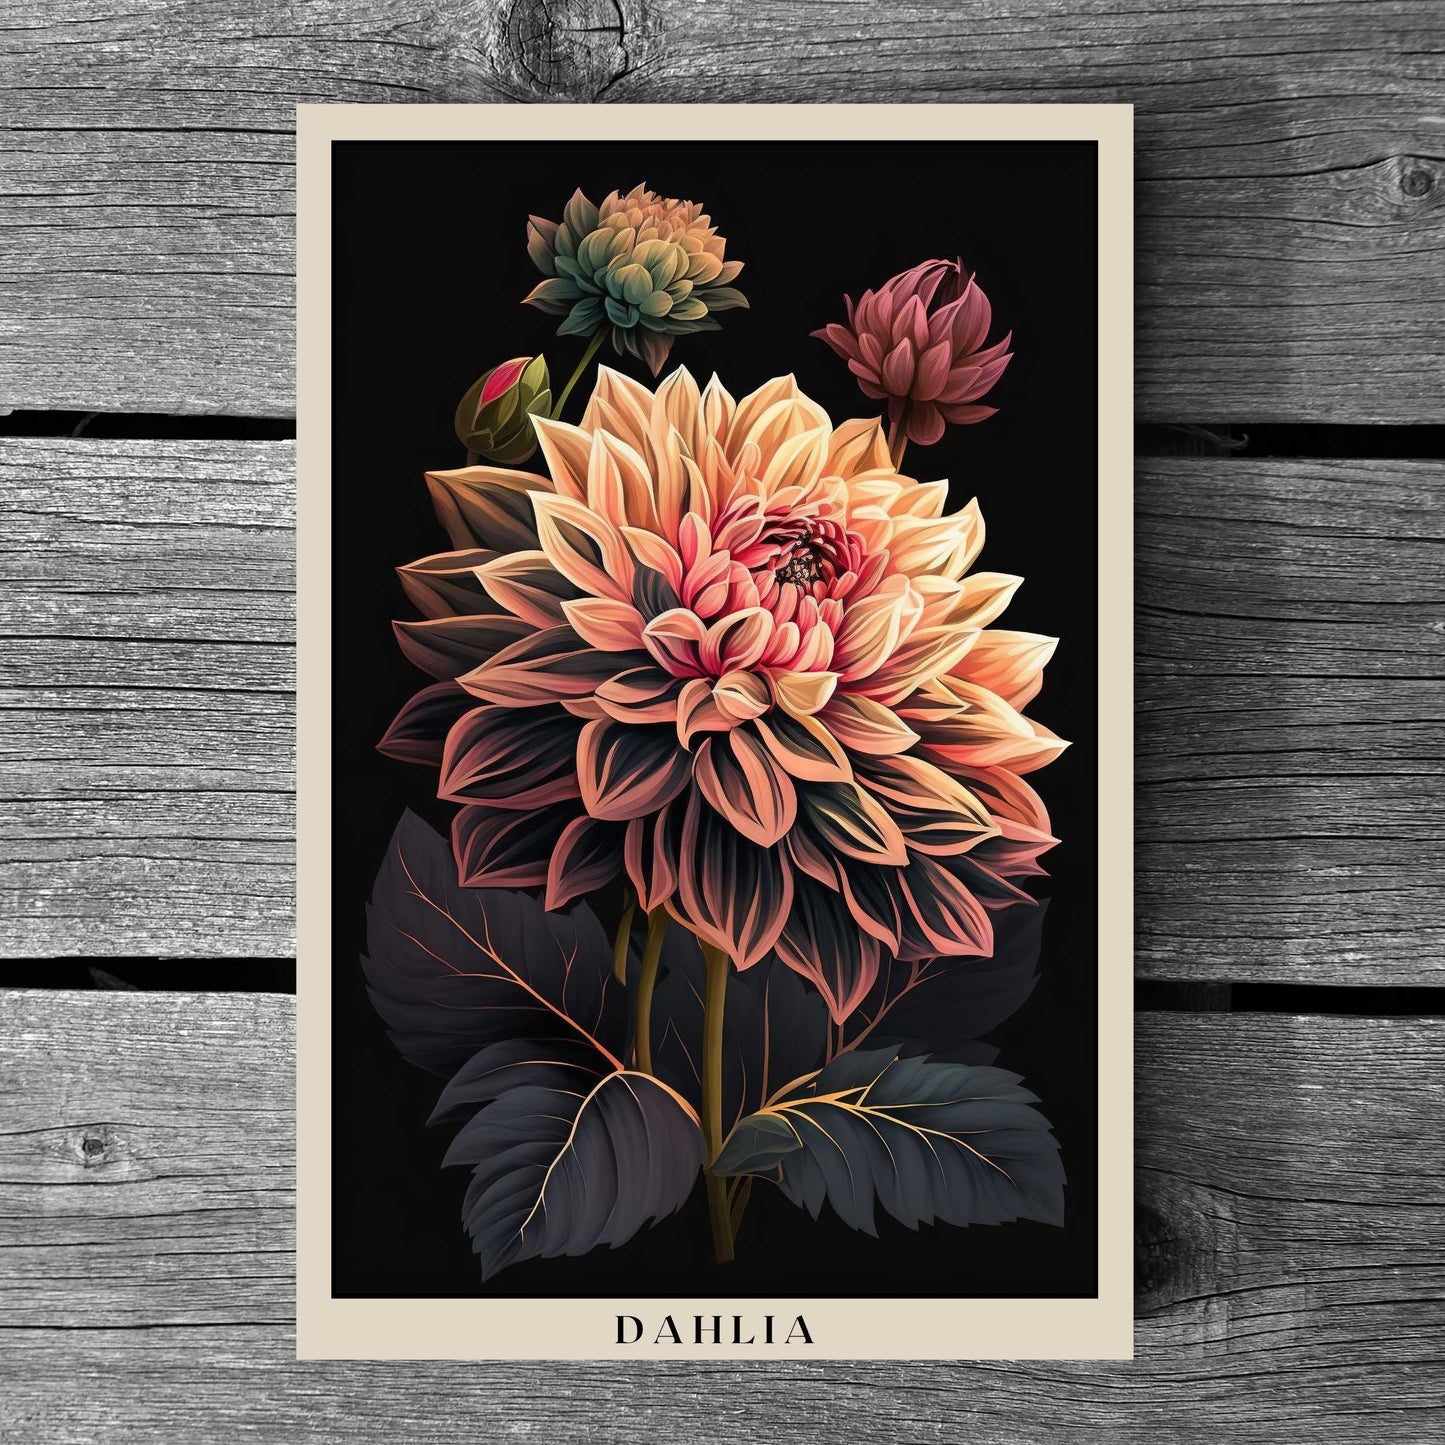 Dahlia Poster | S01